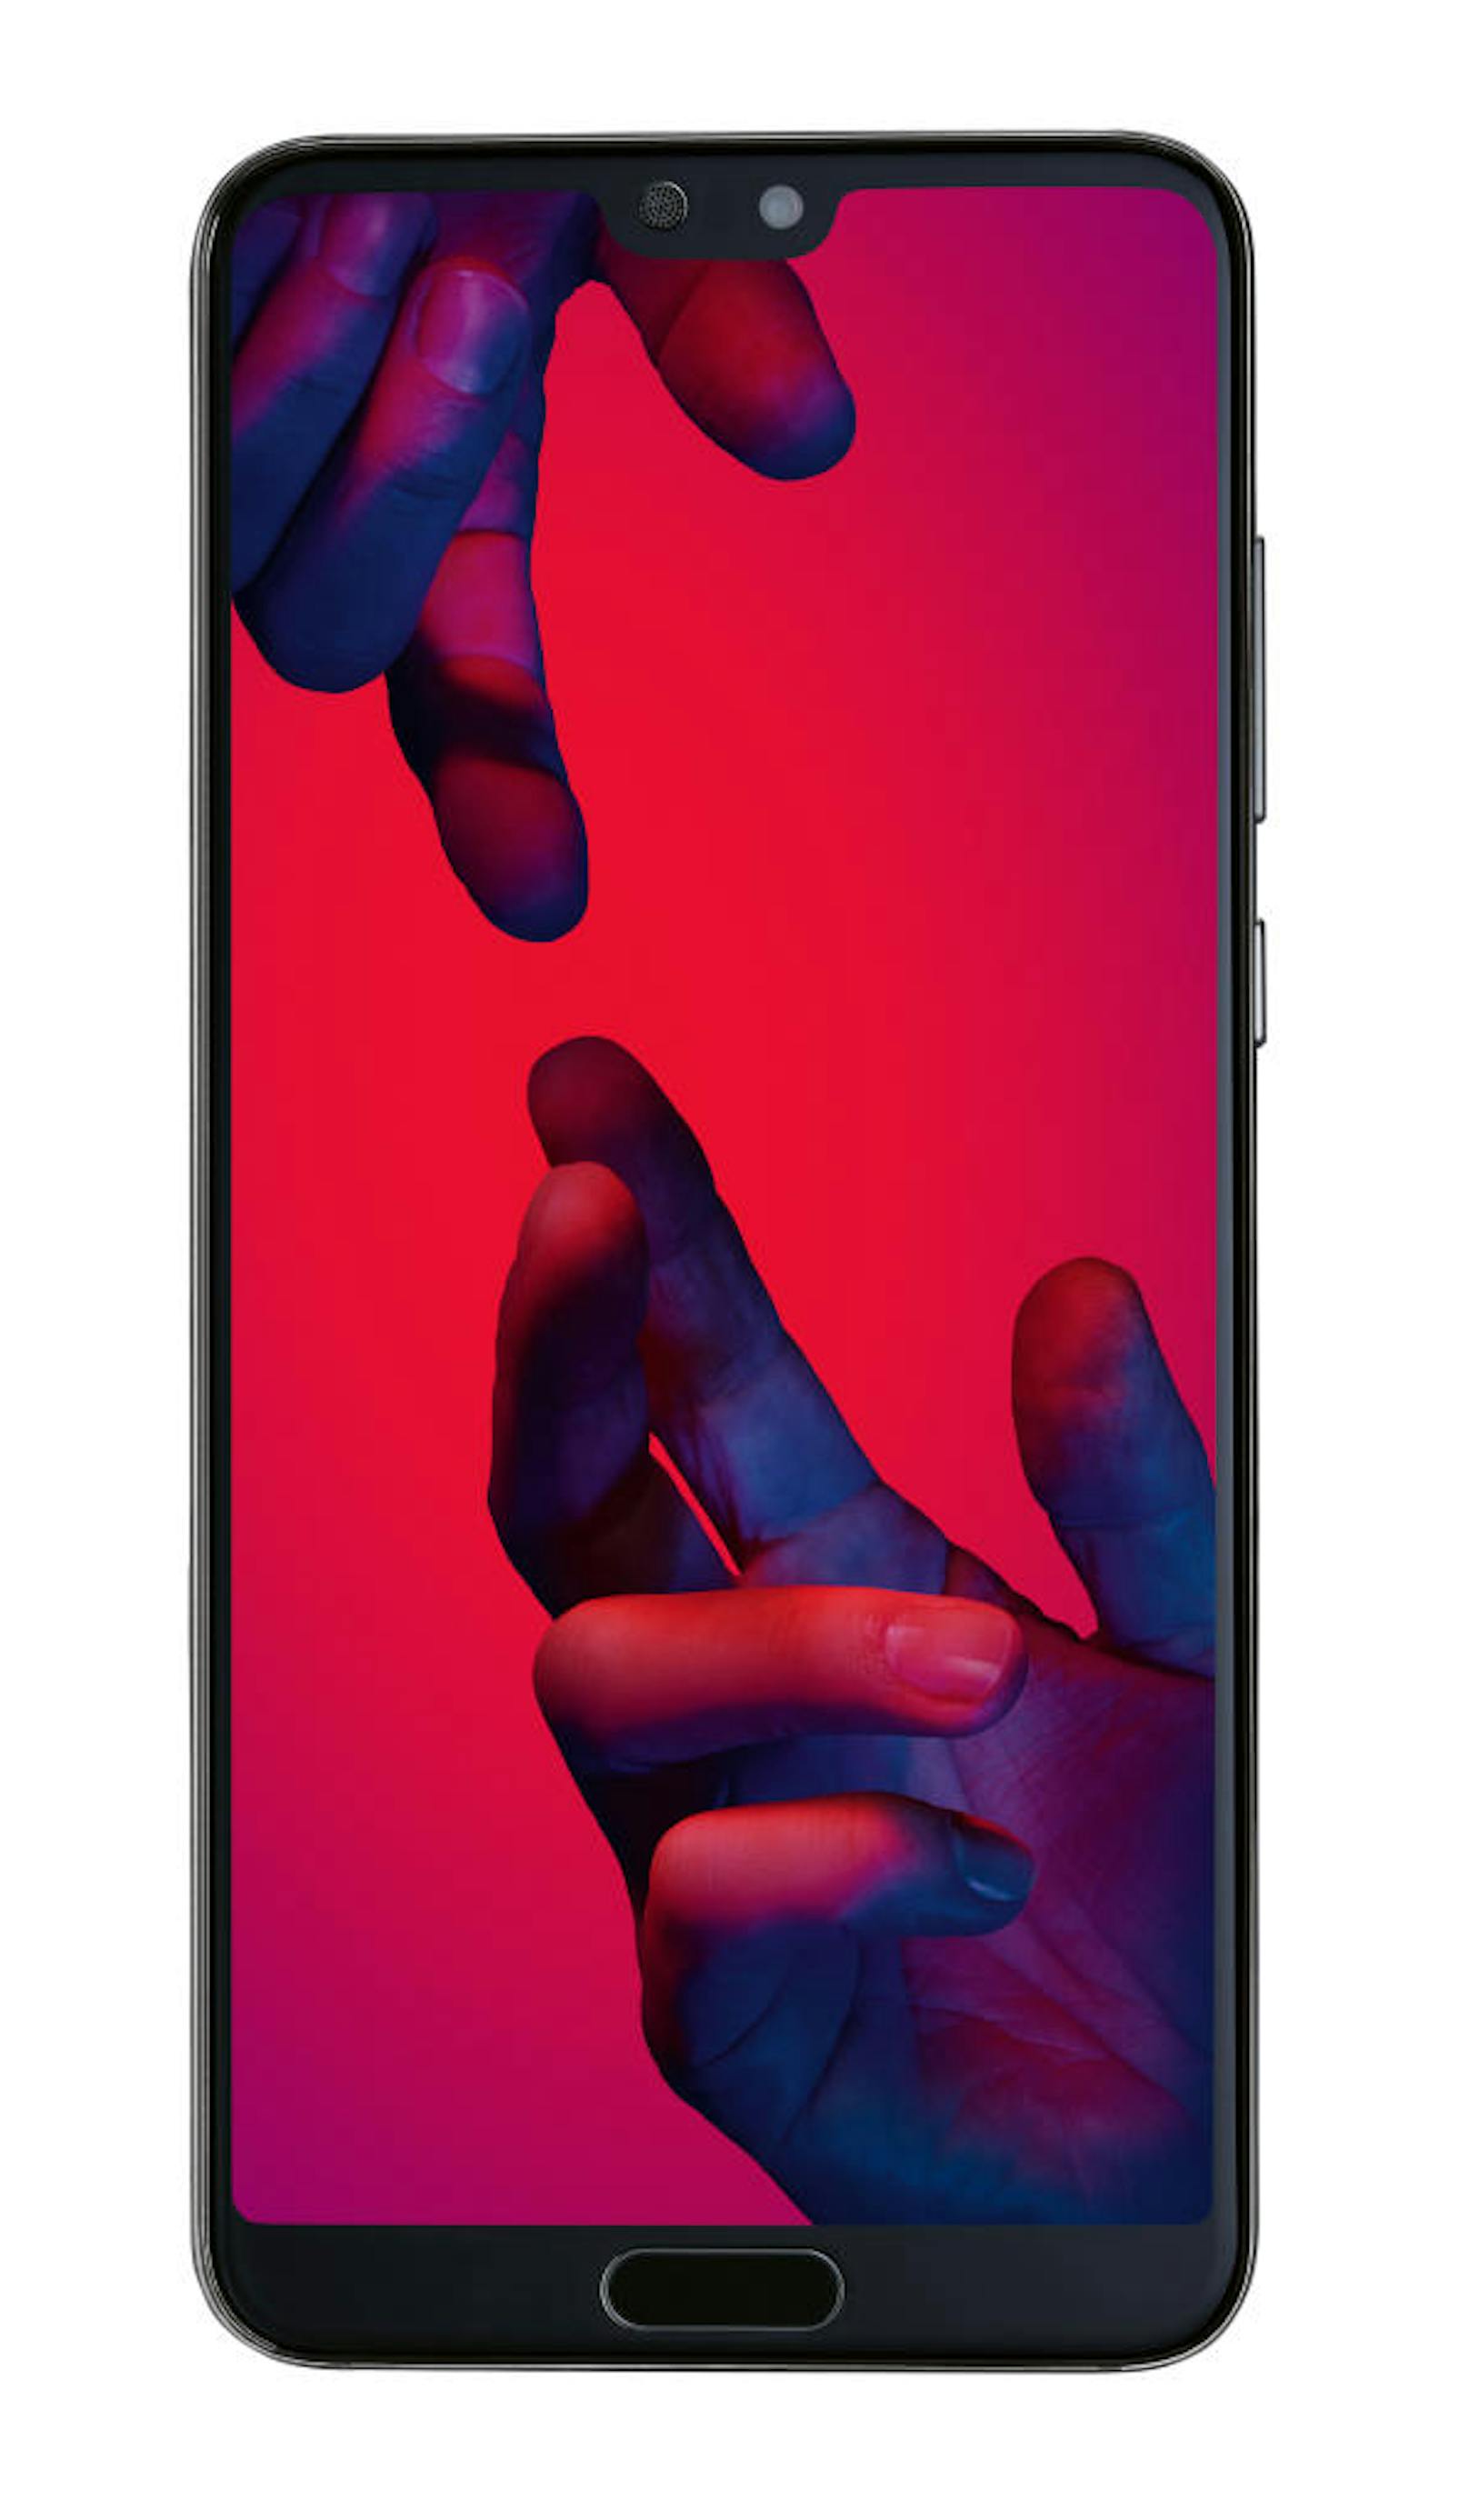 <b>30. März 2018:</b> Immer mehr Android-Phones verfügen über den vom iPhone X bekannten Notch, der Ausnehmung, in die die Selfie-Kamera integriert ist. Ebenso die neue Huawei-Serie P20. Hier kann der "Notch" aber abgeschaltet werden: In den Einstellungen unter Anzeige > Einschnitt kann "Einschnitt verbergen" ausgewählt werden. Dann wird der Bereich links und rechts vom Notch schwarz und es sieht aus, als ob der Notch verschwindet.